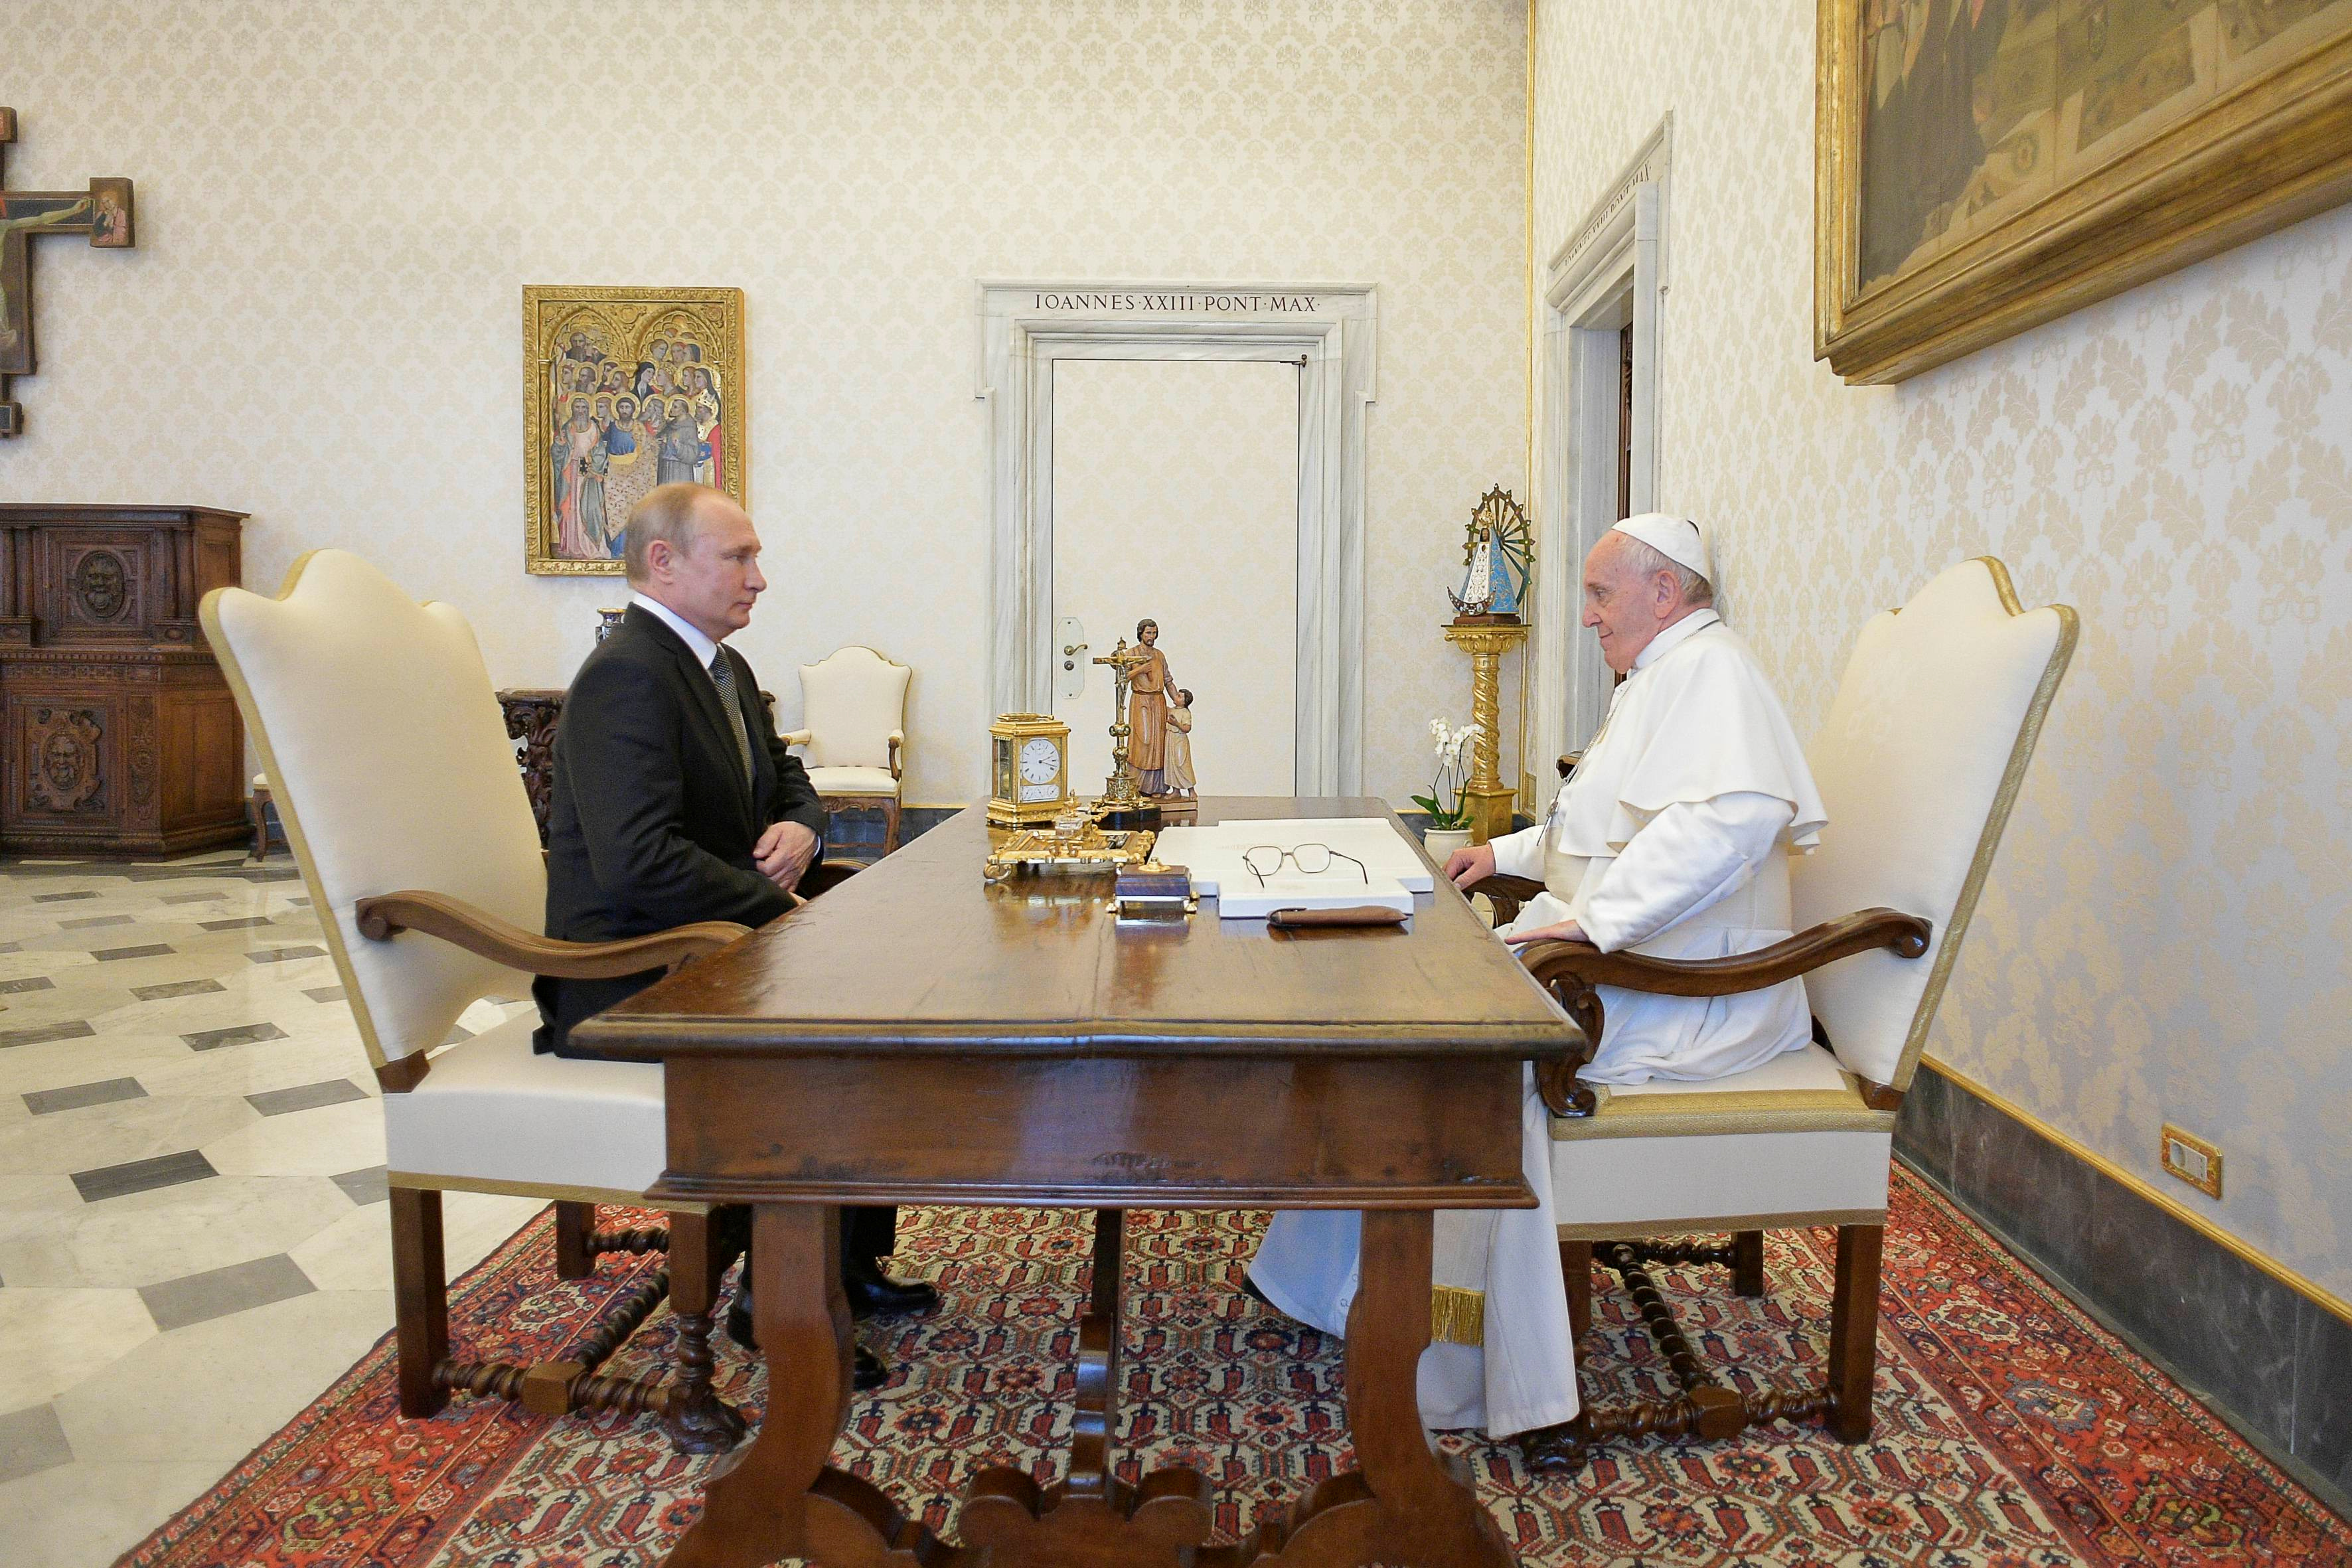 FOTO DE ARCHIVO: El jefe de estado ruso Vladimir Putin -acusado de cometer crímenes de guerra durante su invasión a Ucrania- se reúne con el Papa Francisco en el Vaticano el 4 de julio de 2019 (Reuters)